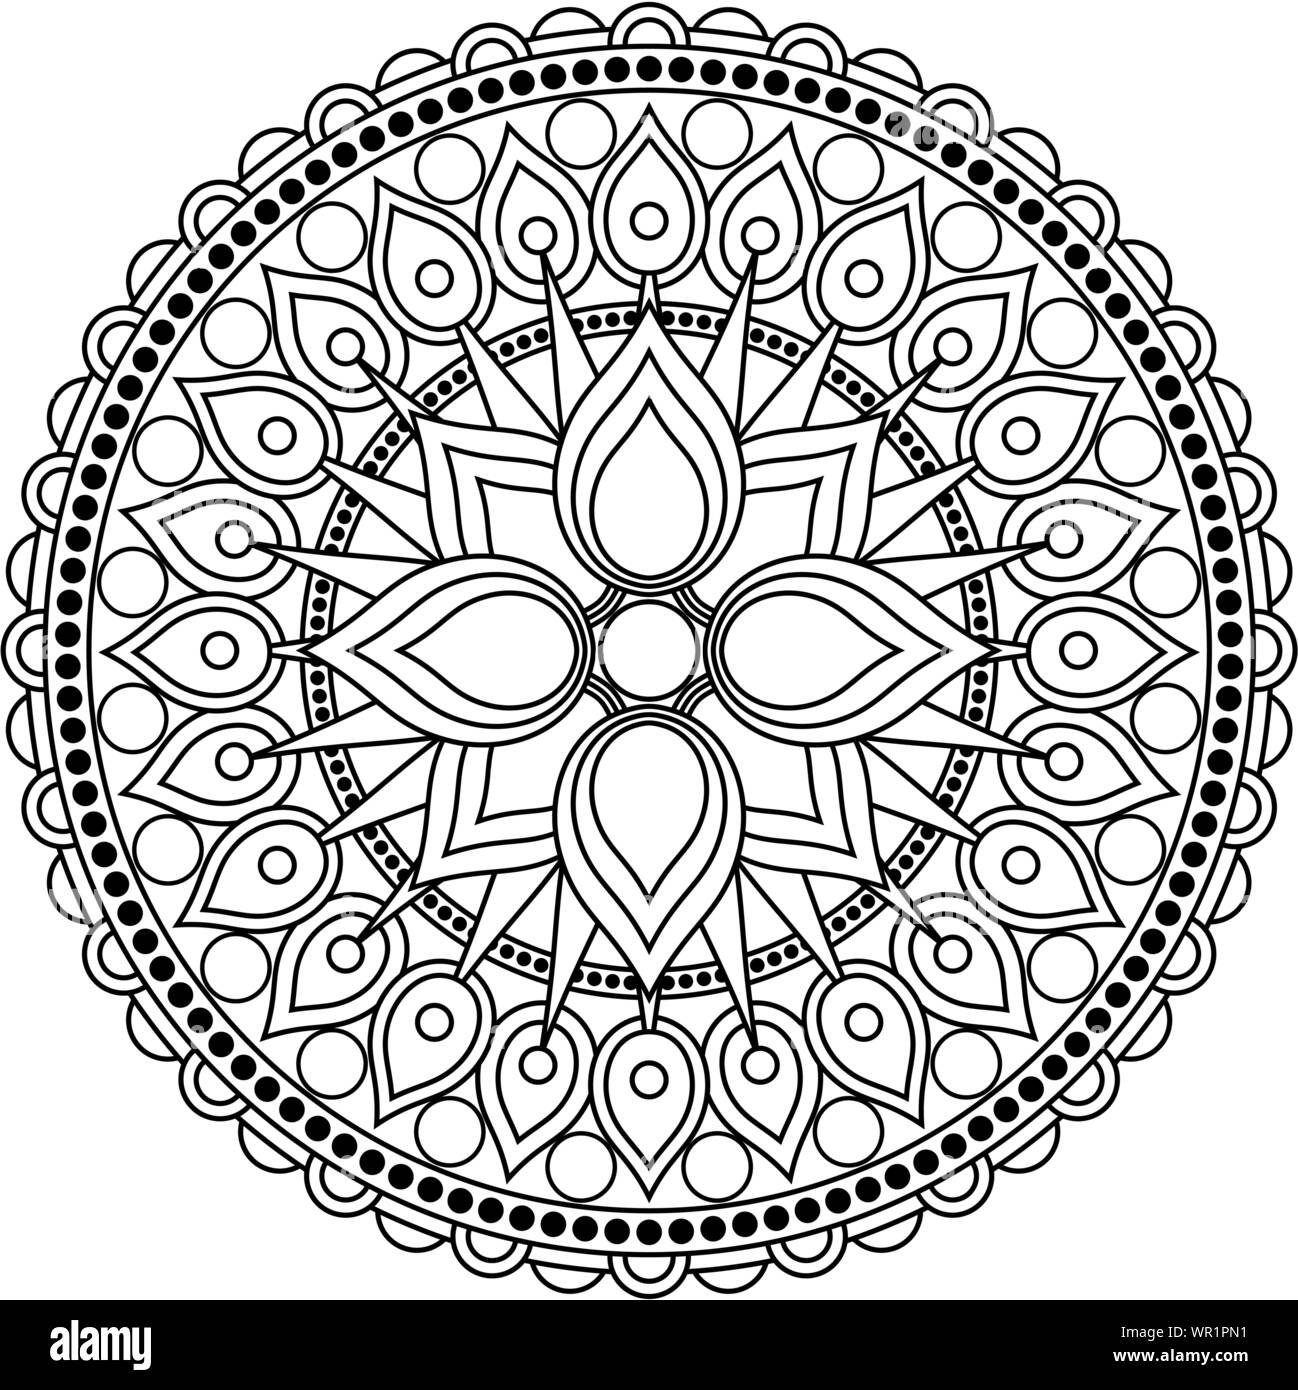 Mandala design Black and White Stock Photos & Images - Alamy